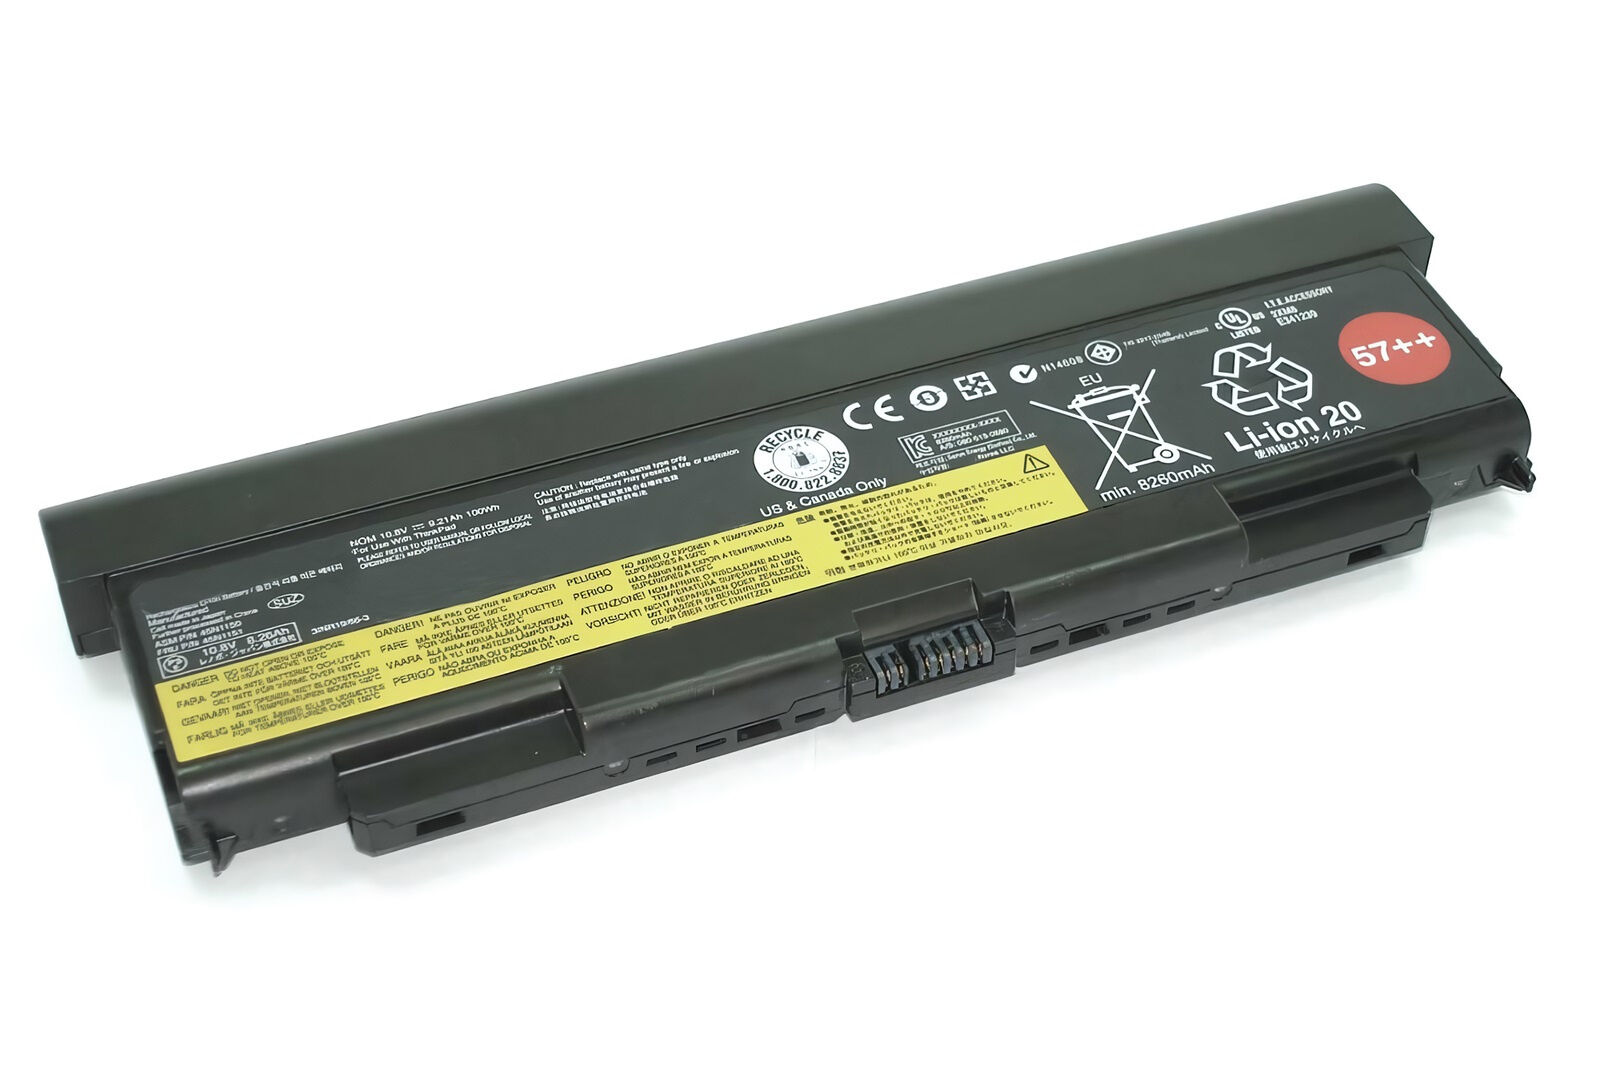 Аккумулятор для Lenovo ThinkPad T440p 57++ ORG (10.8V 8960mAh) p/n: 0C52863, 0C52864, 45N1151